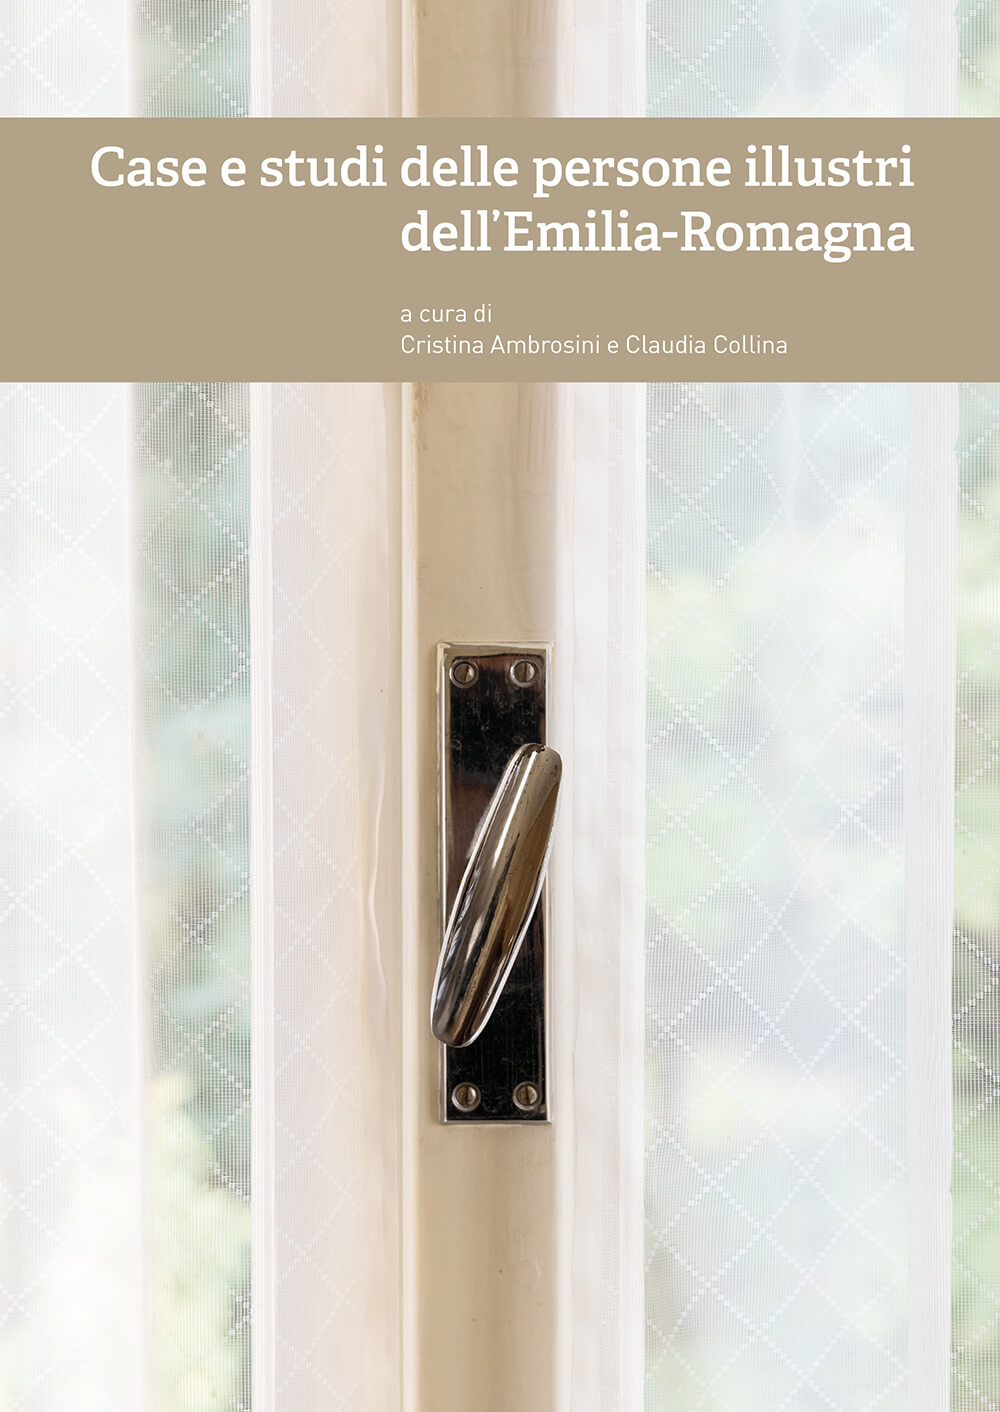 Case e studi delle persone illustri dell’Emilia-Romagna - Bologna University Press